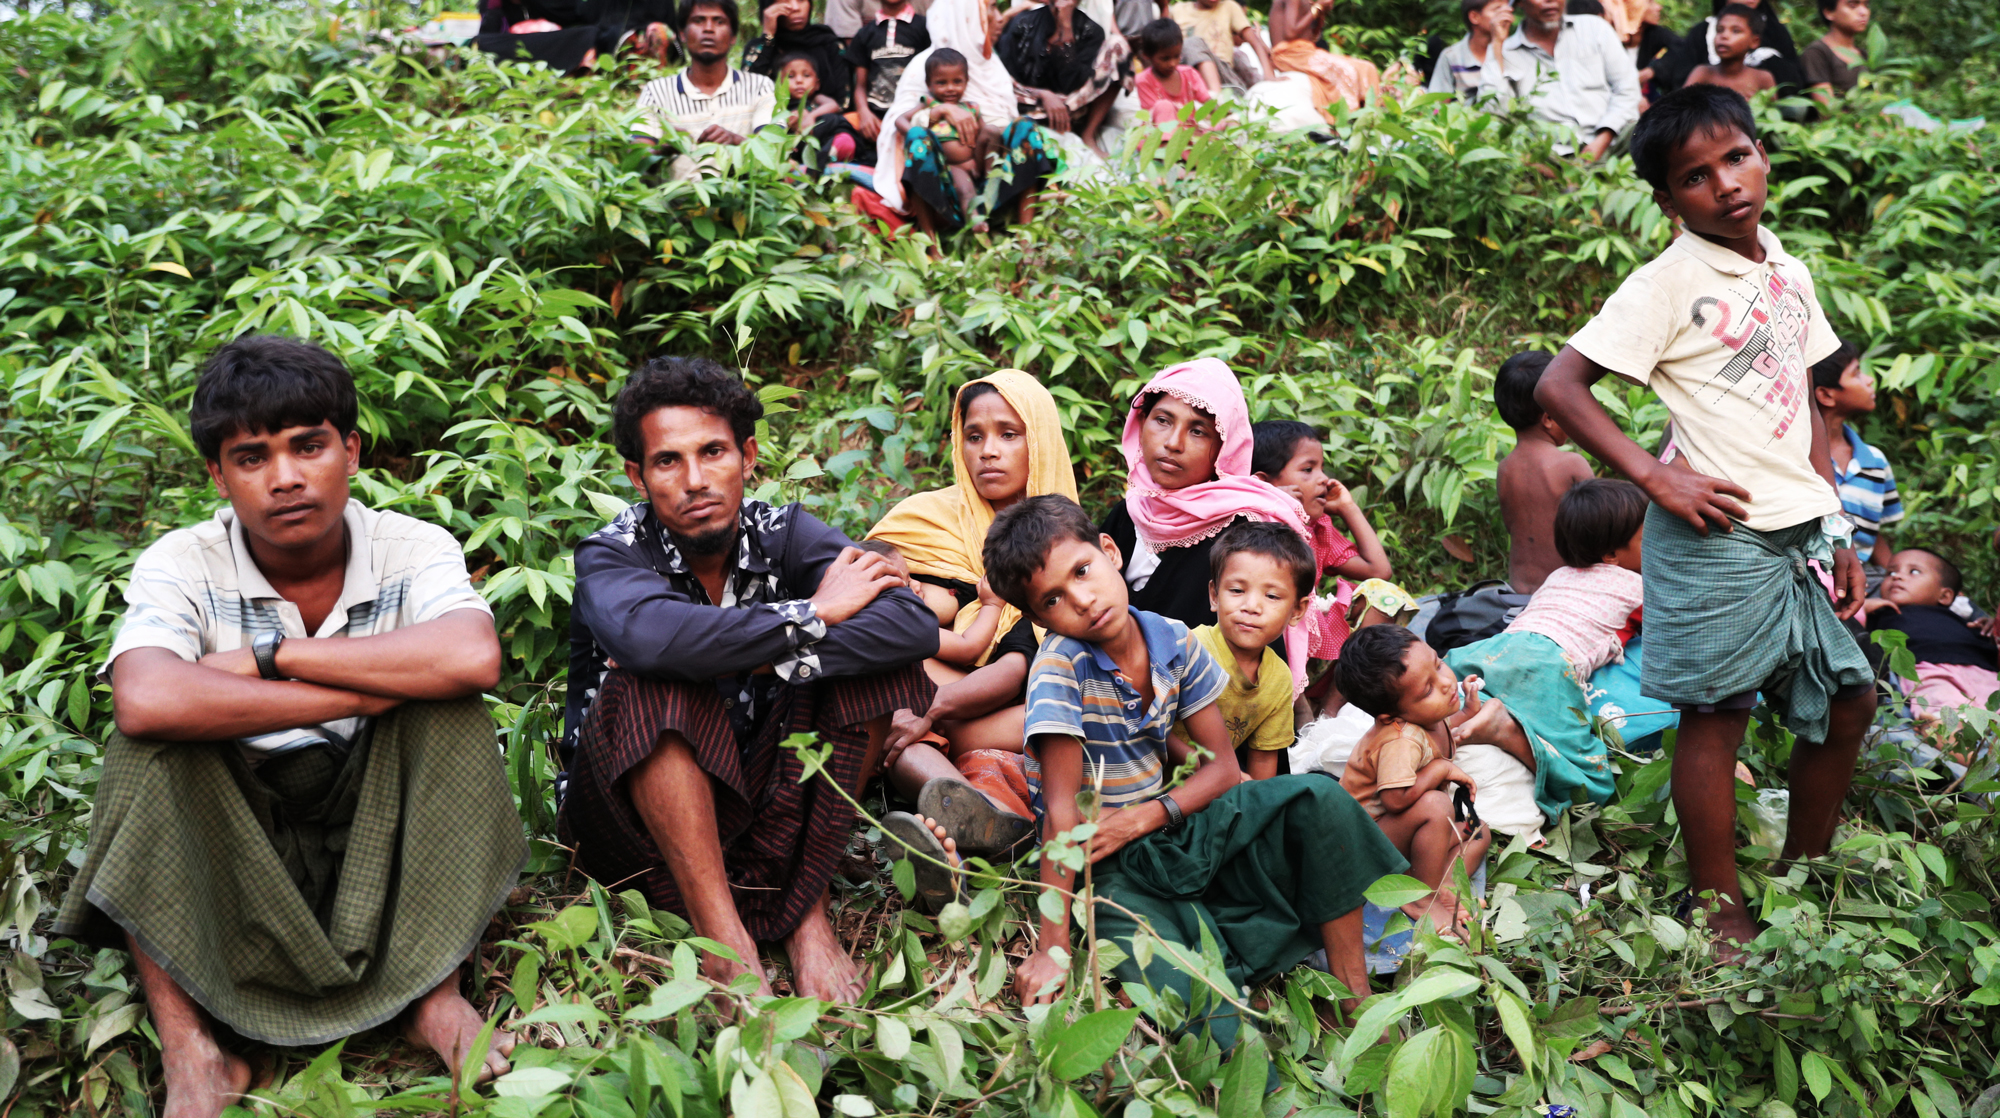 Репортаж Daily Storm из лагеря беженцев-рохинья в Бангладеш, сумевших пережить охоту на мусульман в Мьянме undefined